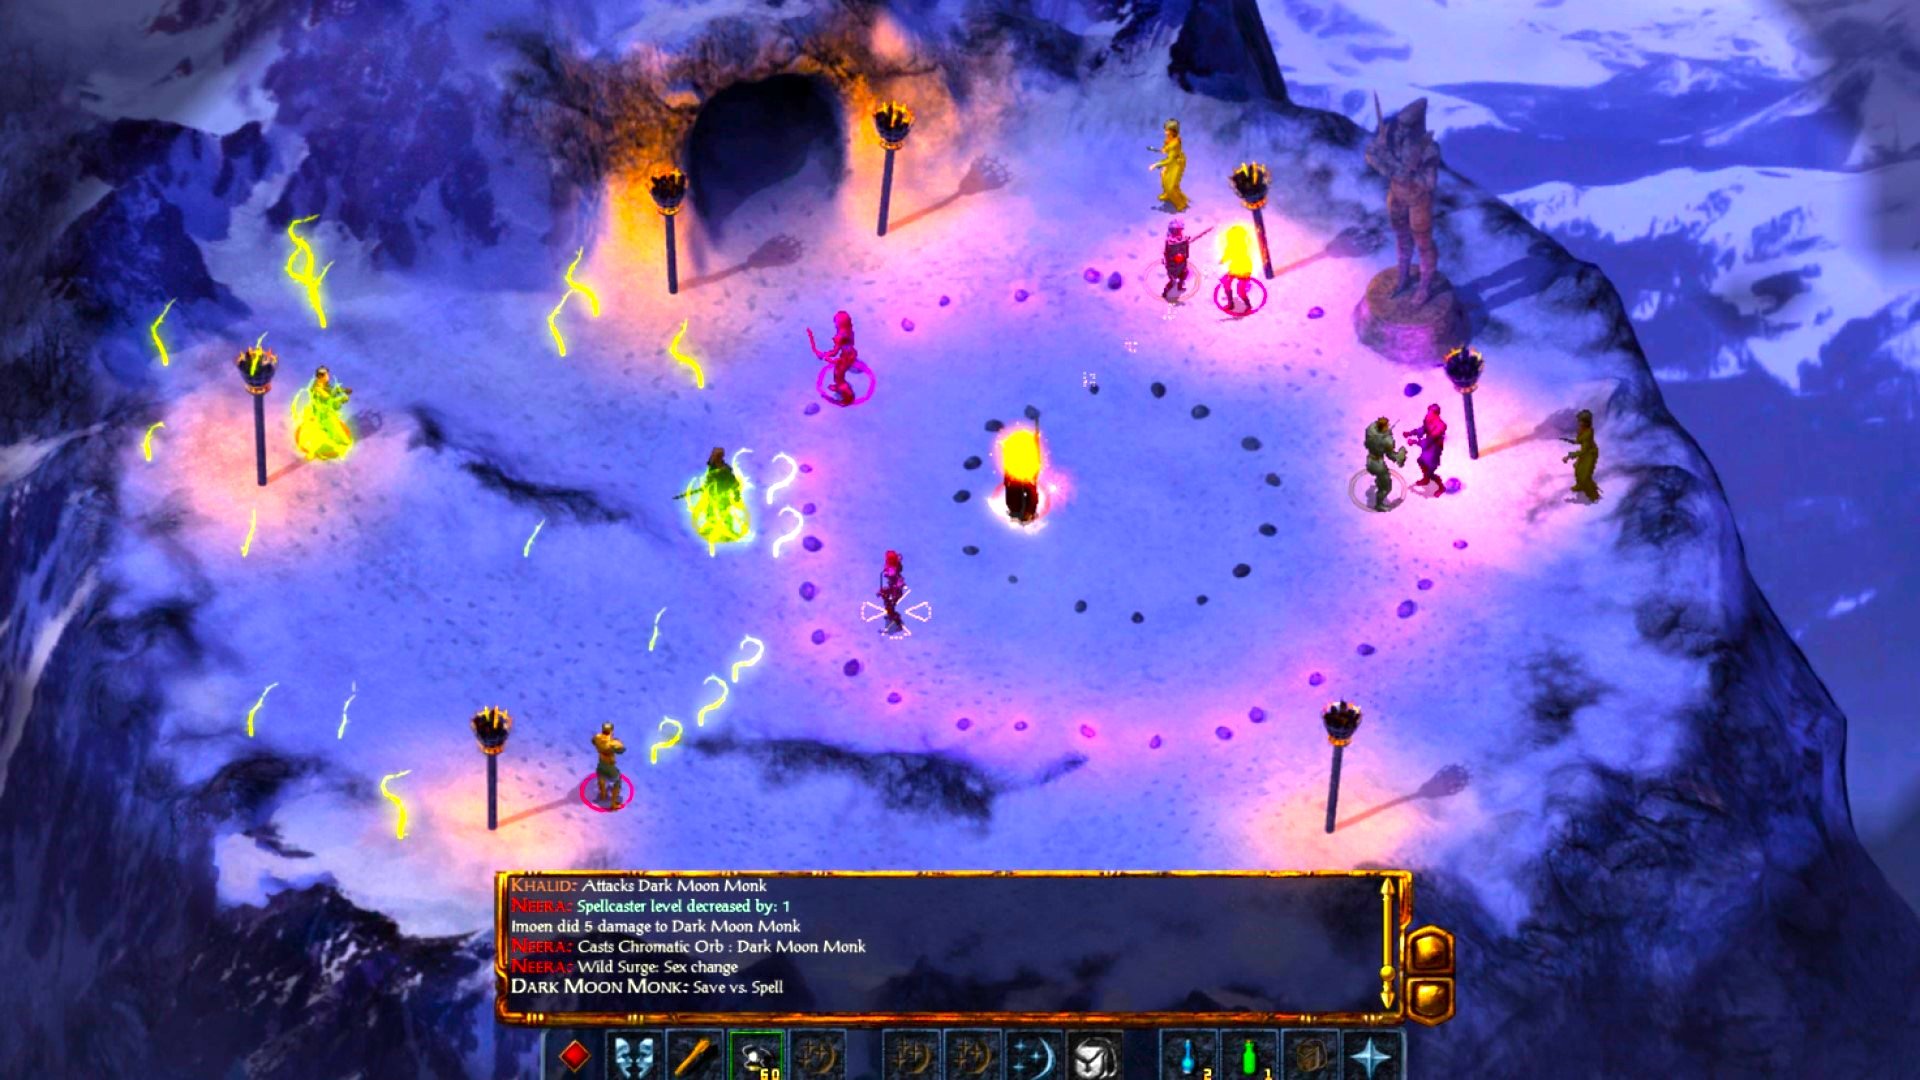 DnD video games - Baldur's Gate mountain ritual gameplay sceen